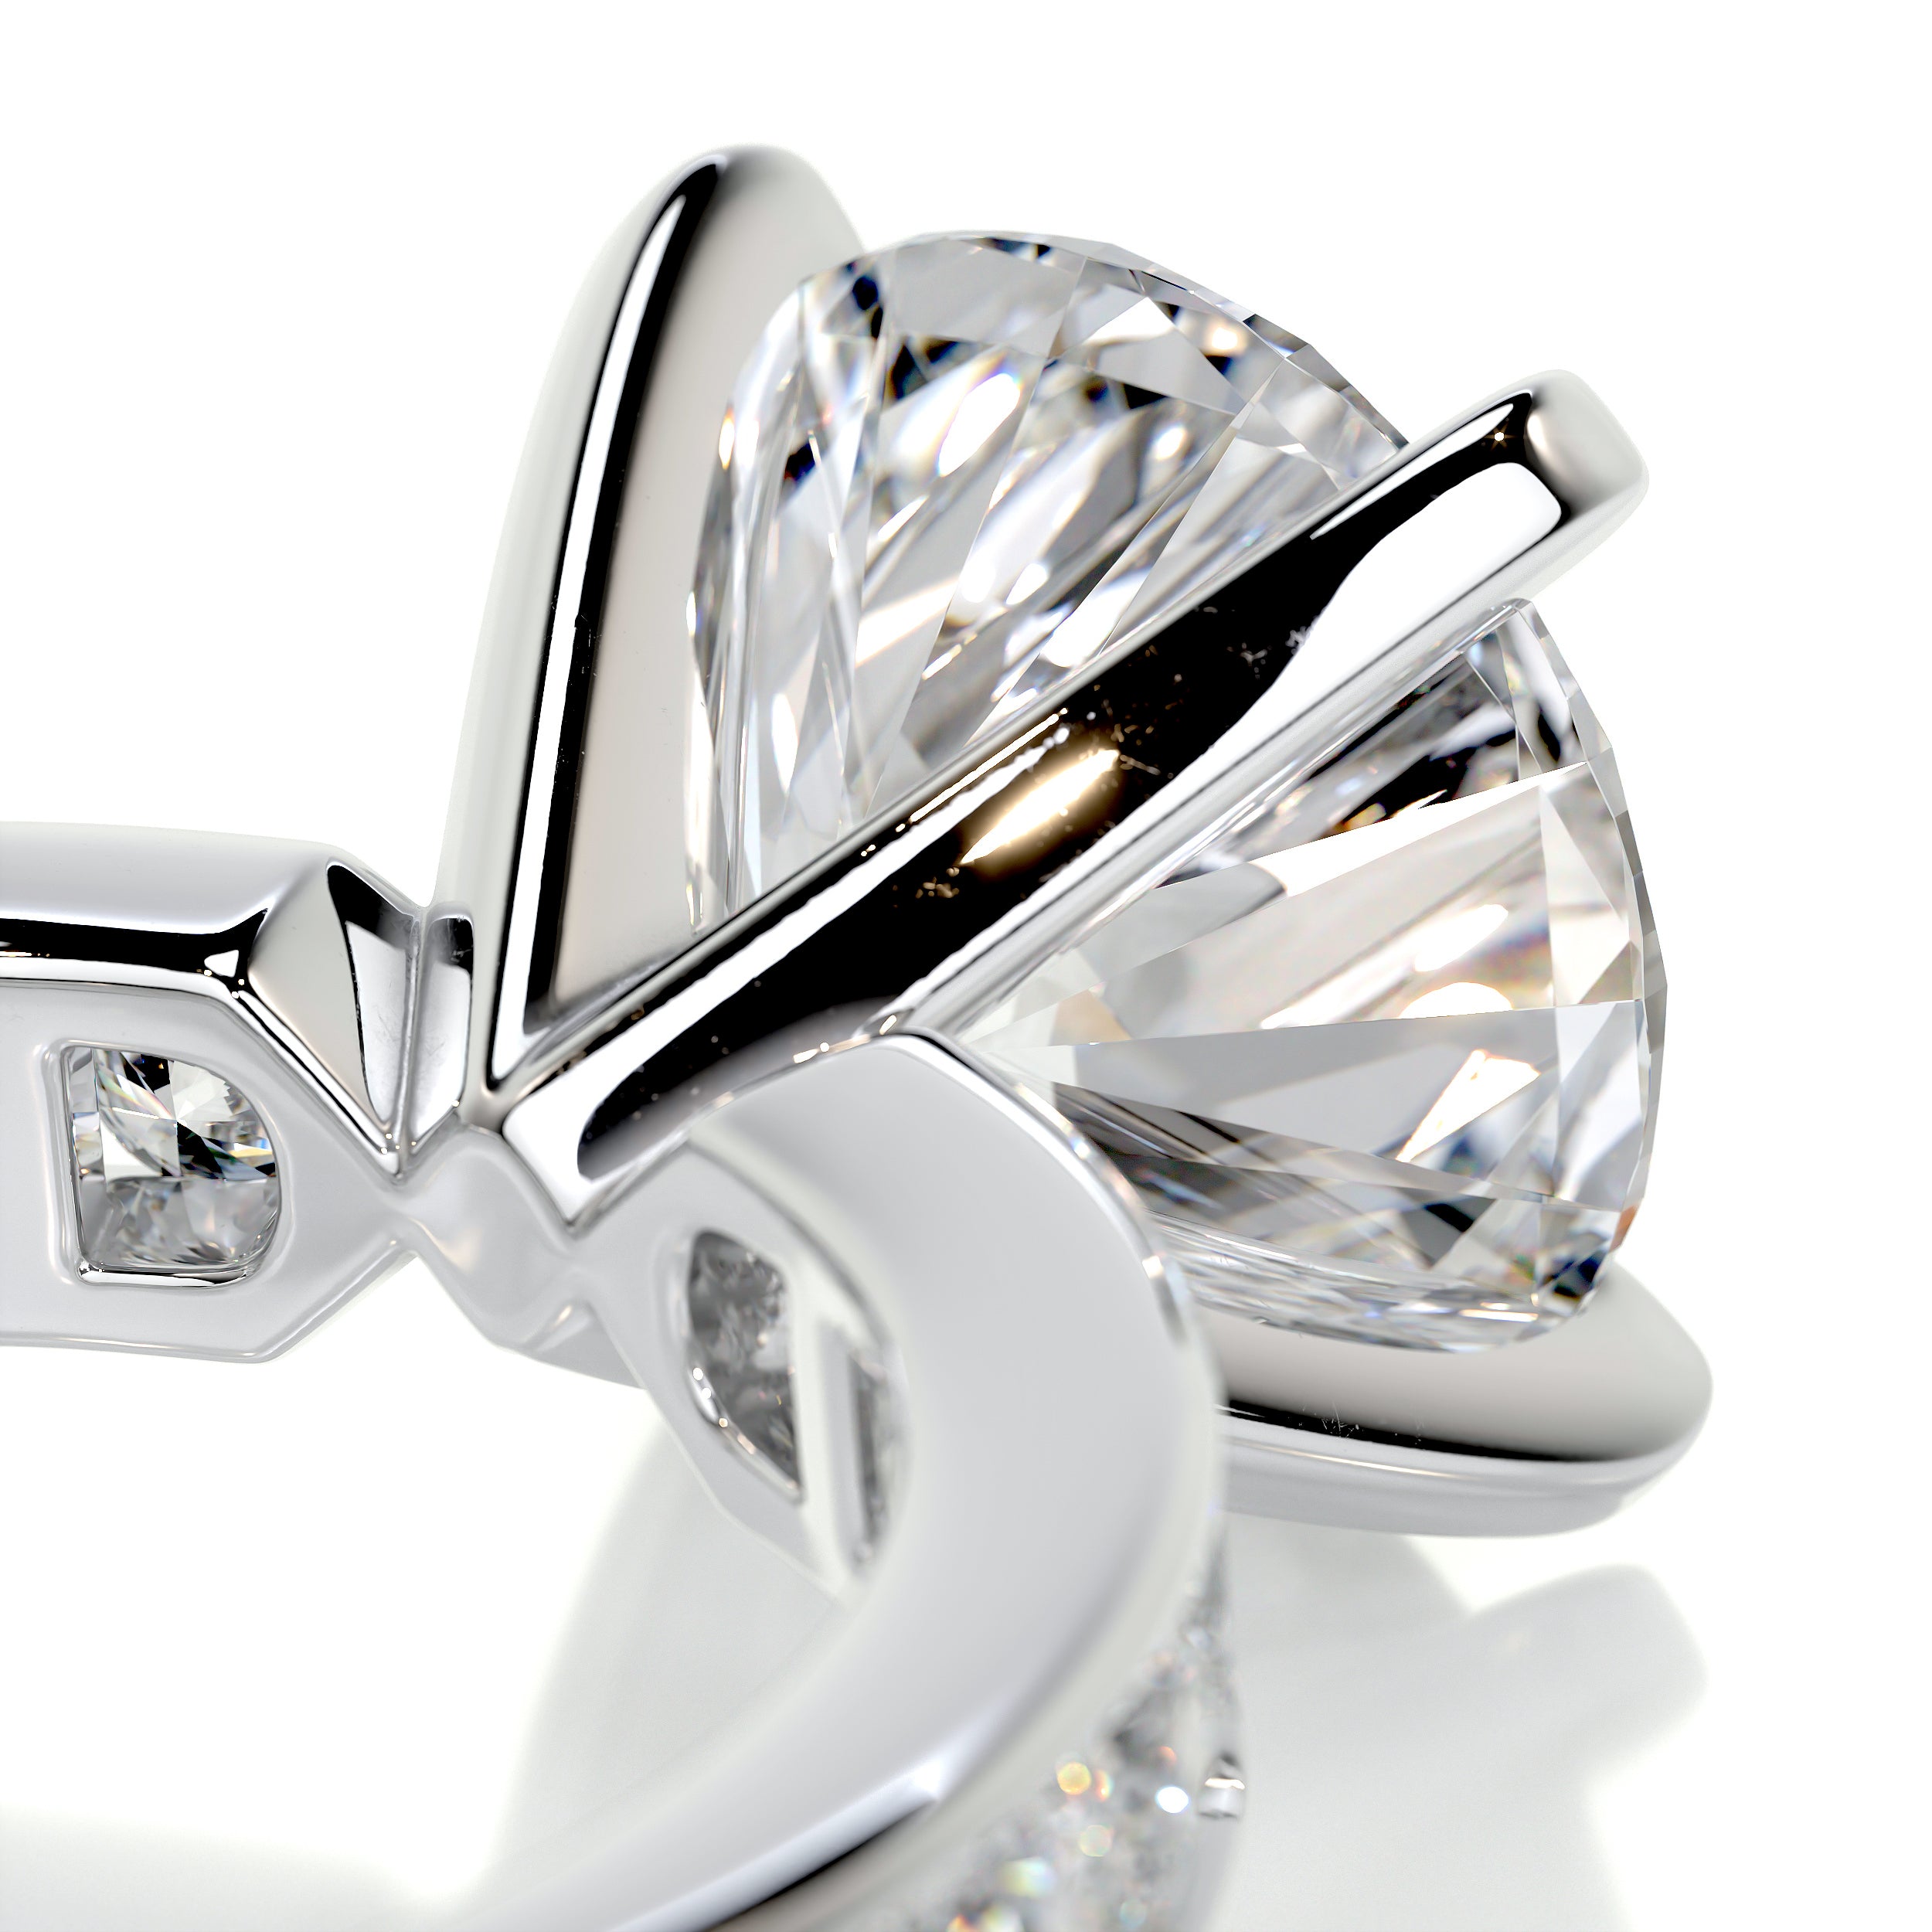 Giselle Diamond Engagement Ring   (3.50 Carat) -14K White Gold